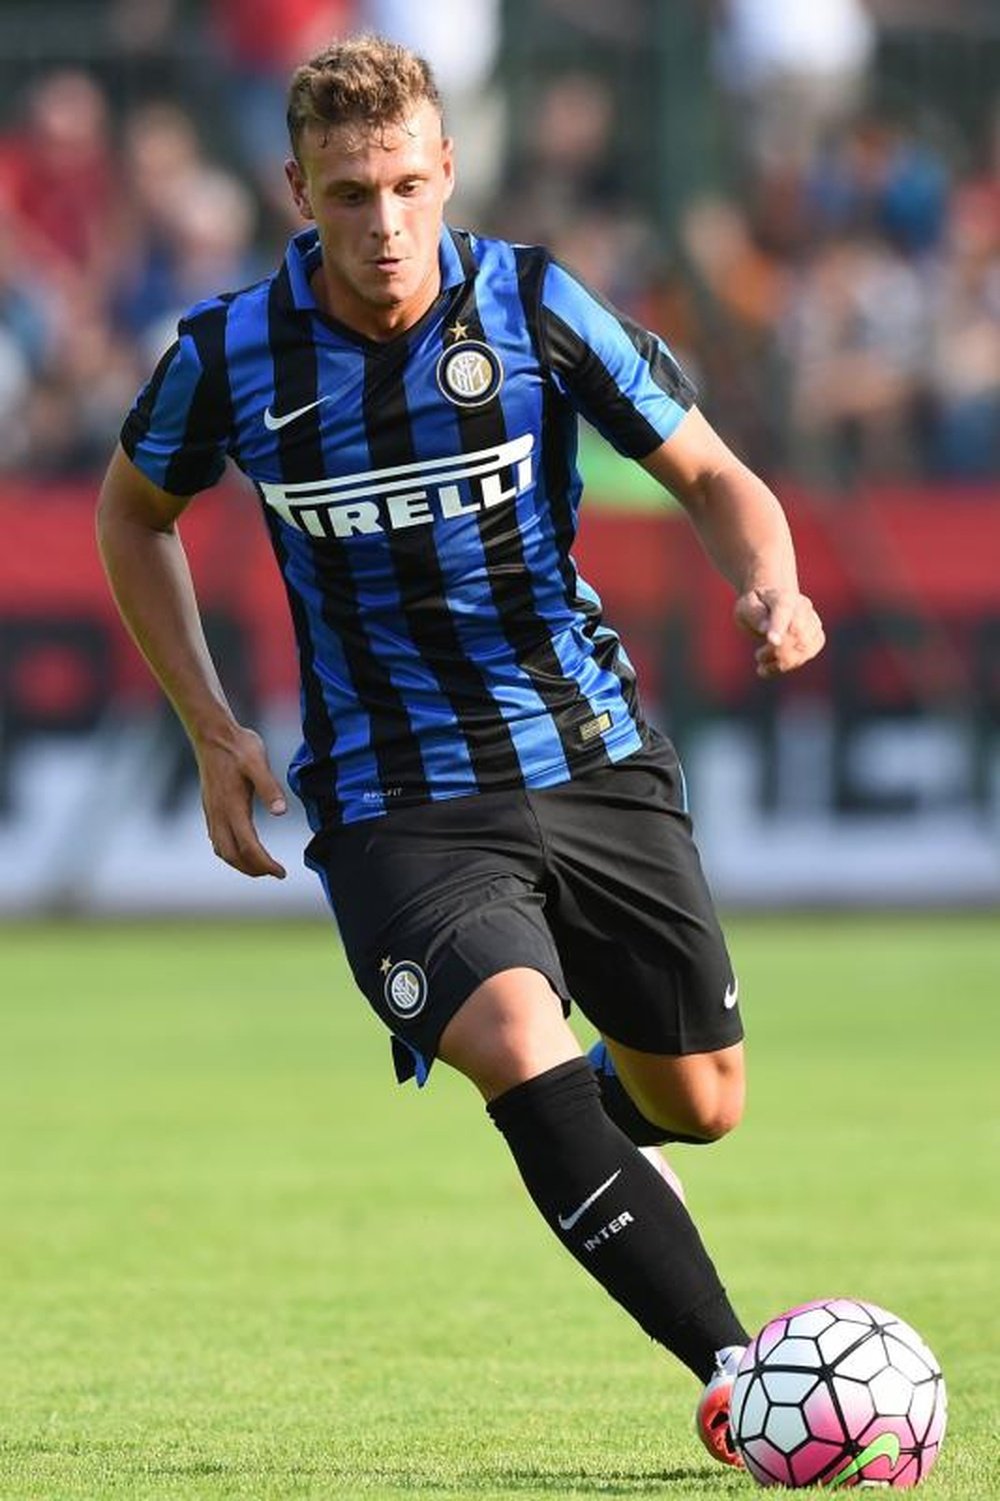 Dimarco jugará cedido en el Empoli la próxima temporada después de su buen papel en el Ascoli. Inter